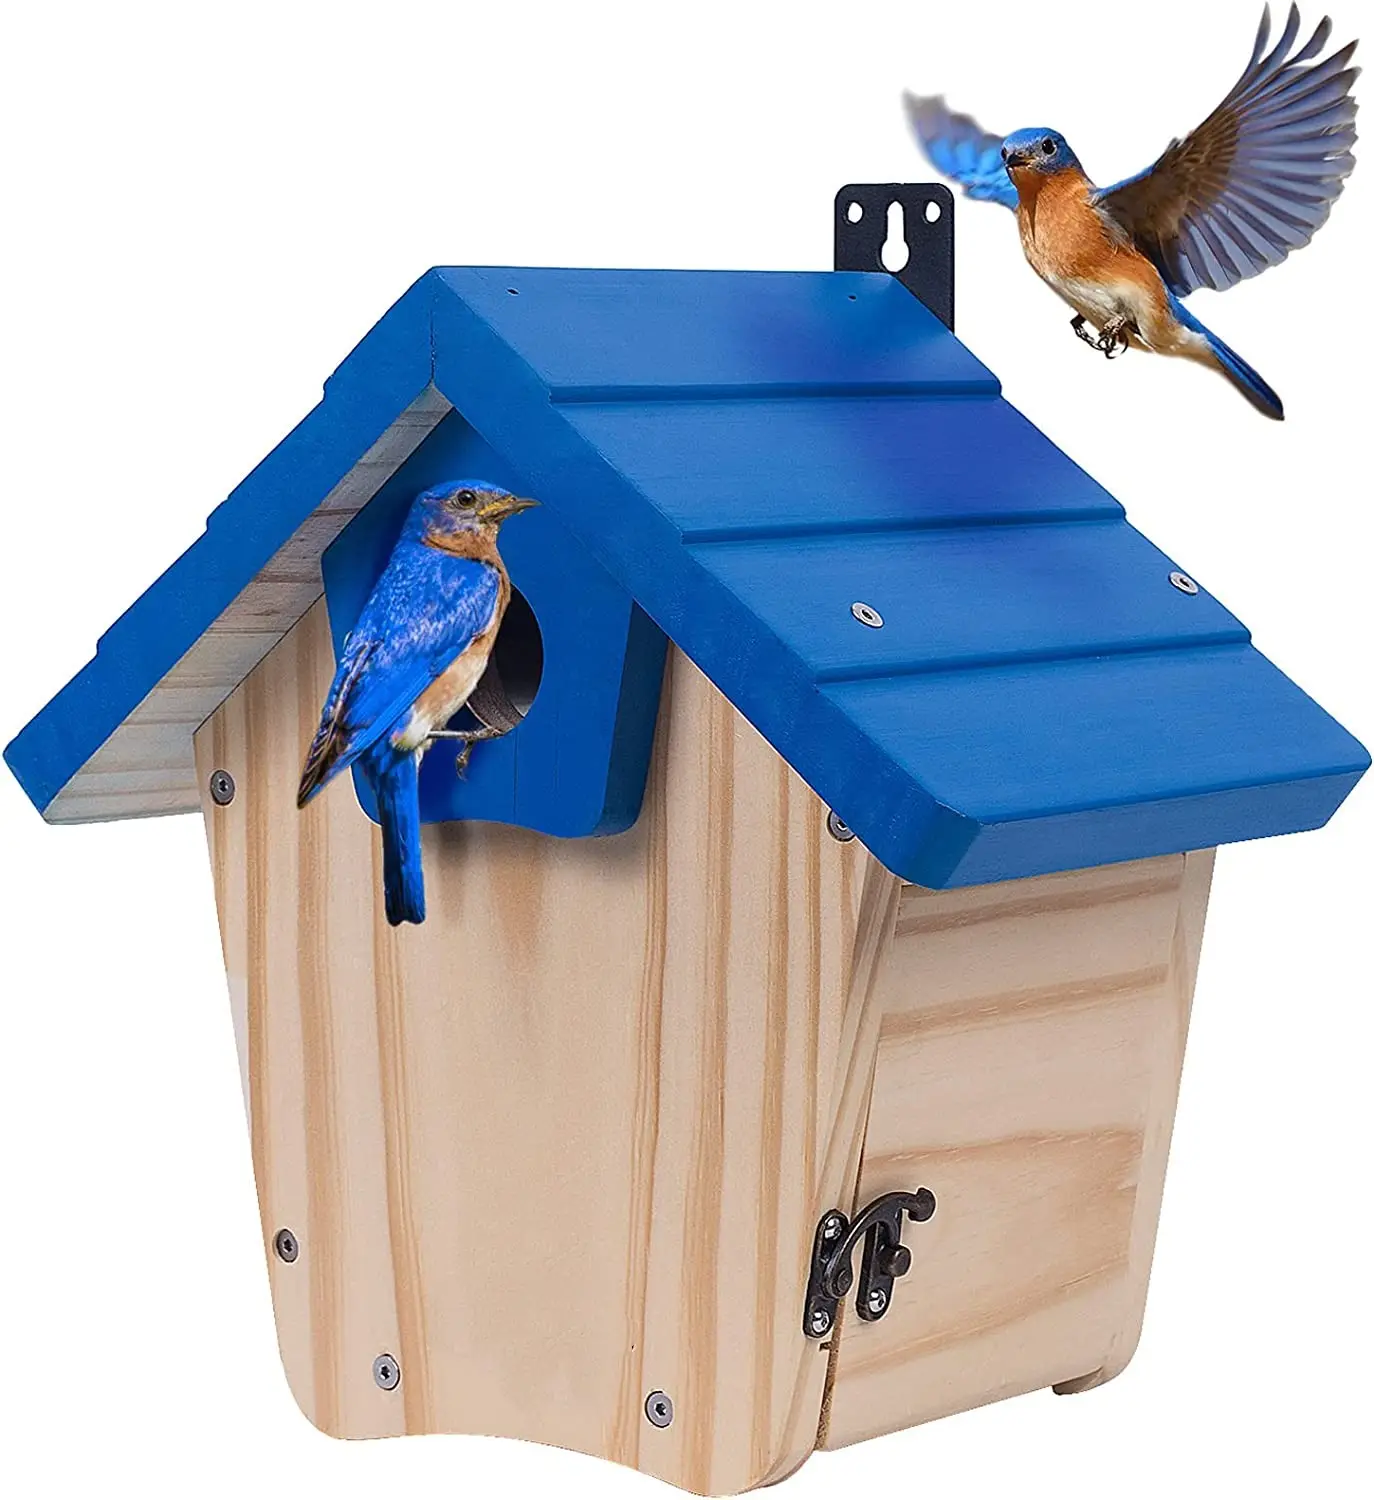 Açık kuş gözlemciliği için uygun predator muhafızları ile ahşap mavi kuş evi